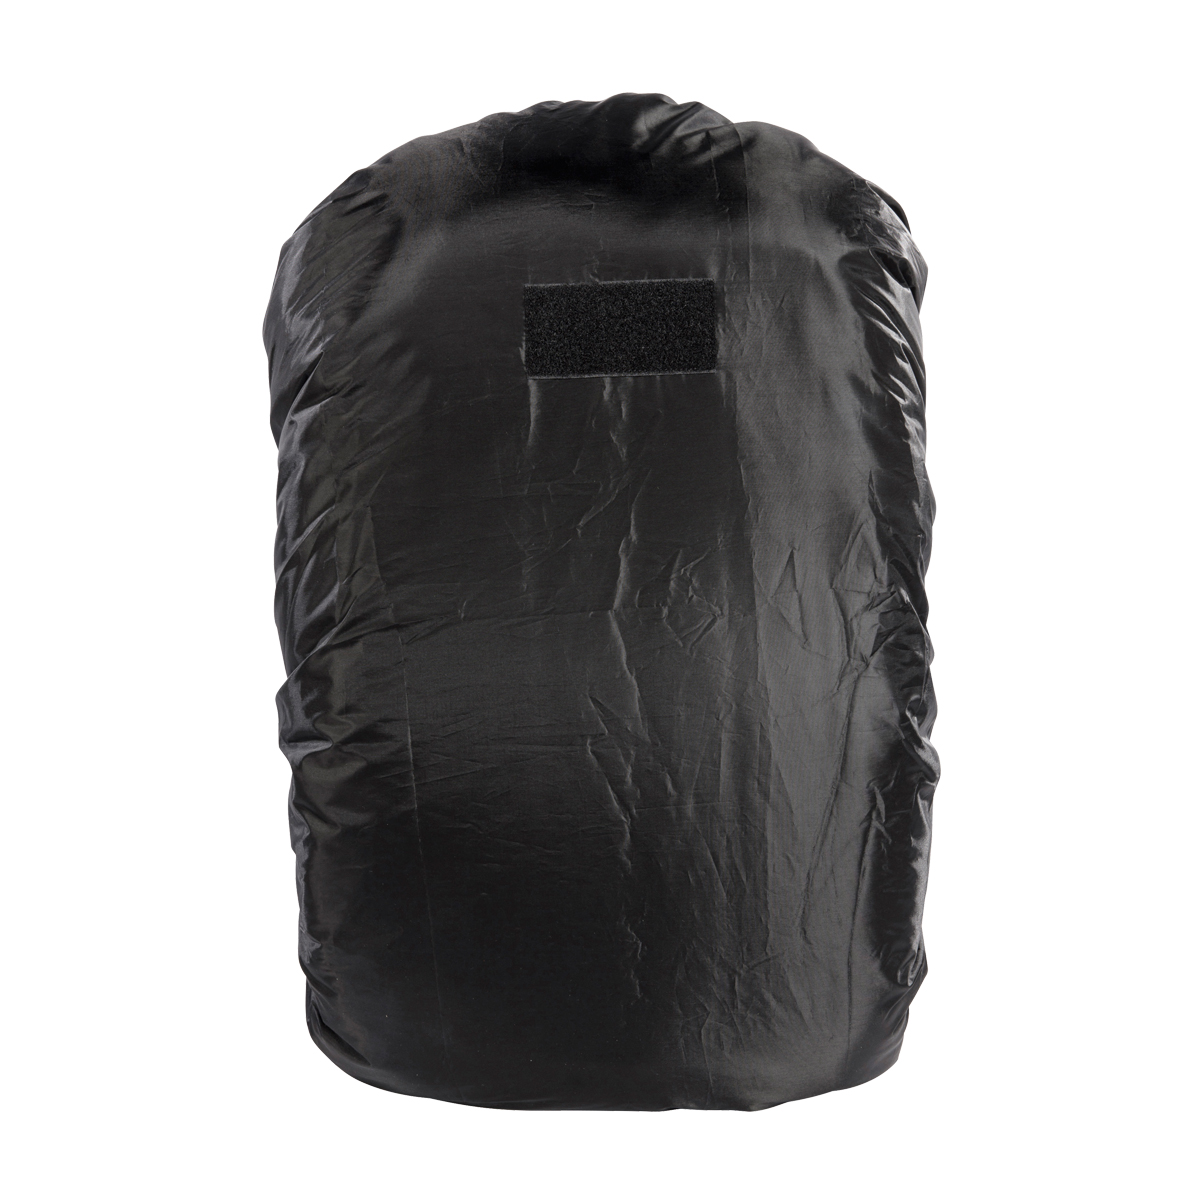 Produktbild von Tasmanian Tiger Raincover M, schwarz - Regenhülle für 40 - 55 Liter Rucksack